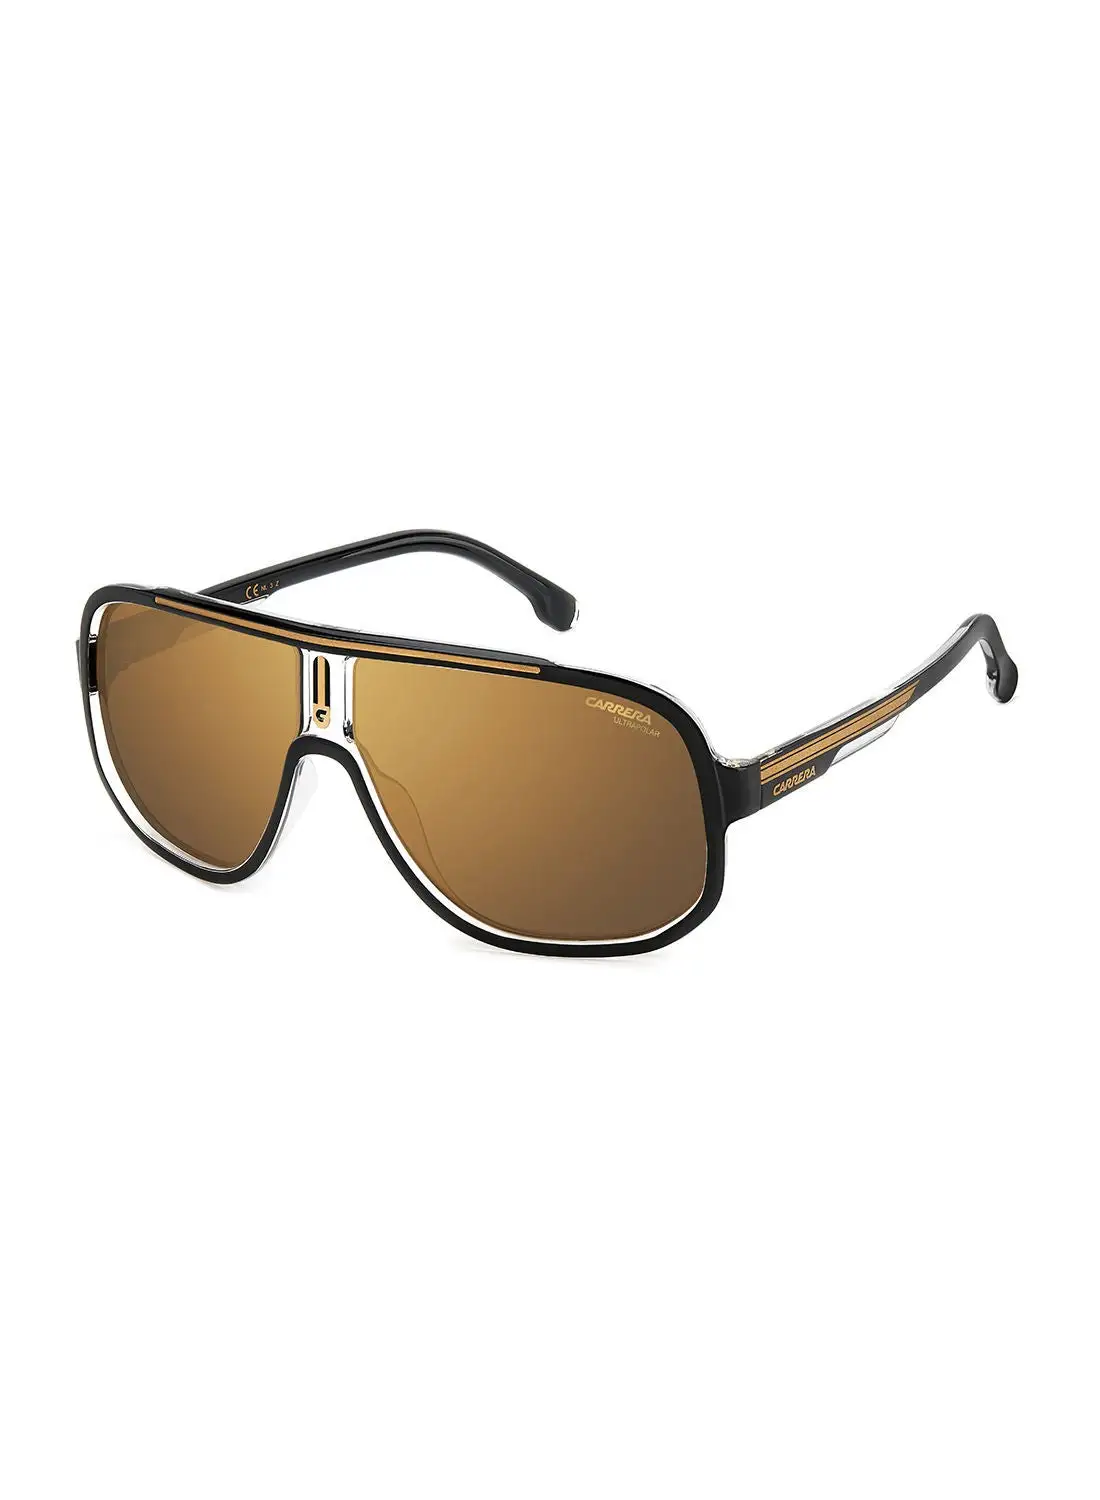 نظارة شمسية كاريرا نافيجيتور للحماية من الأشعة فوق البنفسجية للرجال - Carrera 1058/S أسود/ذهبي 63 - مقاس العدسة: 63 ملم